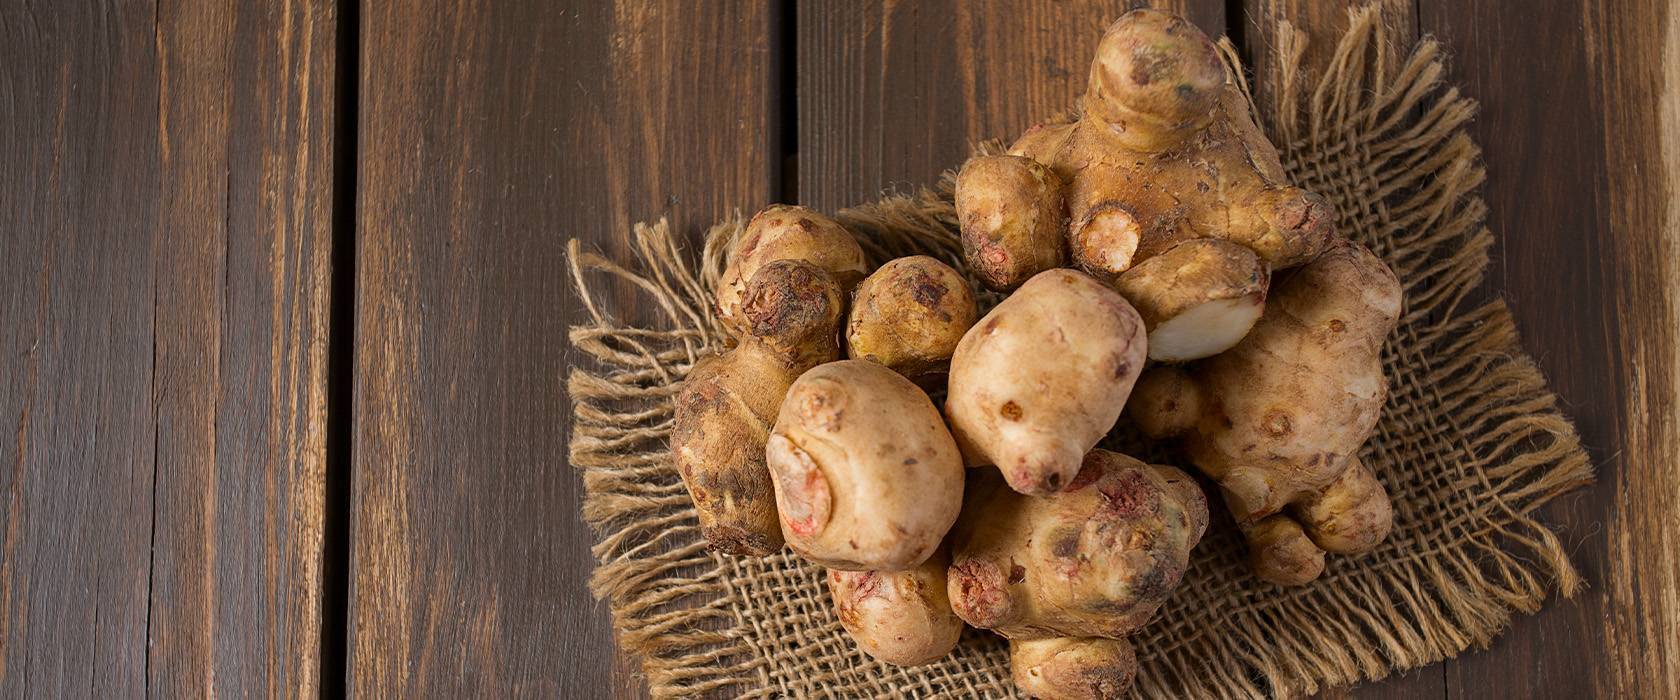 Картошка польза и вред для организма